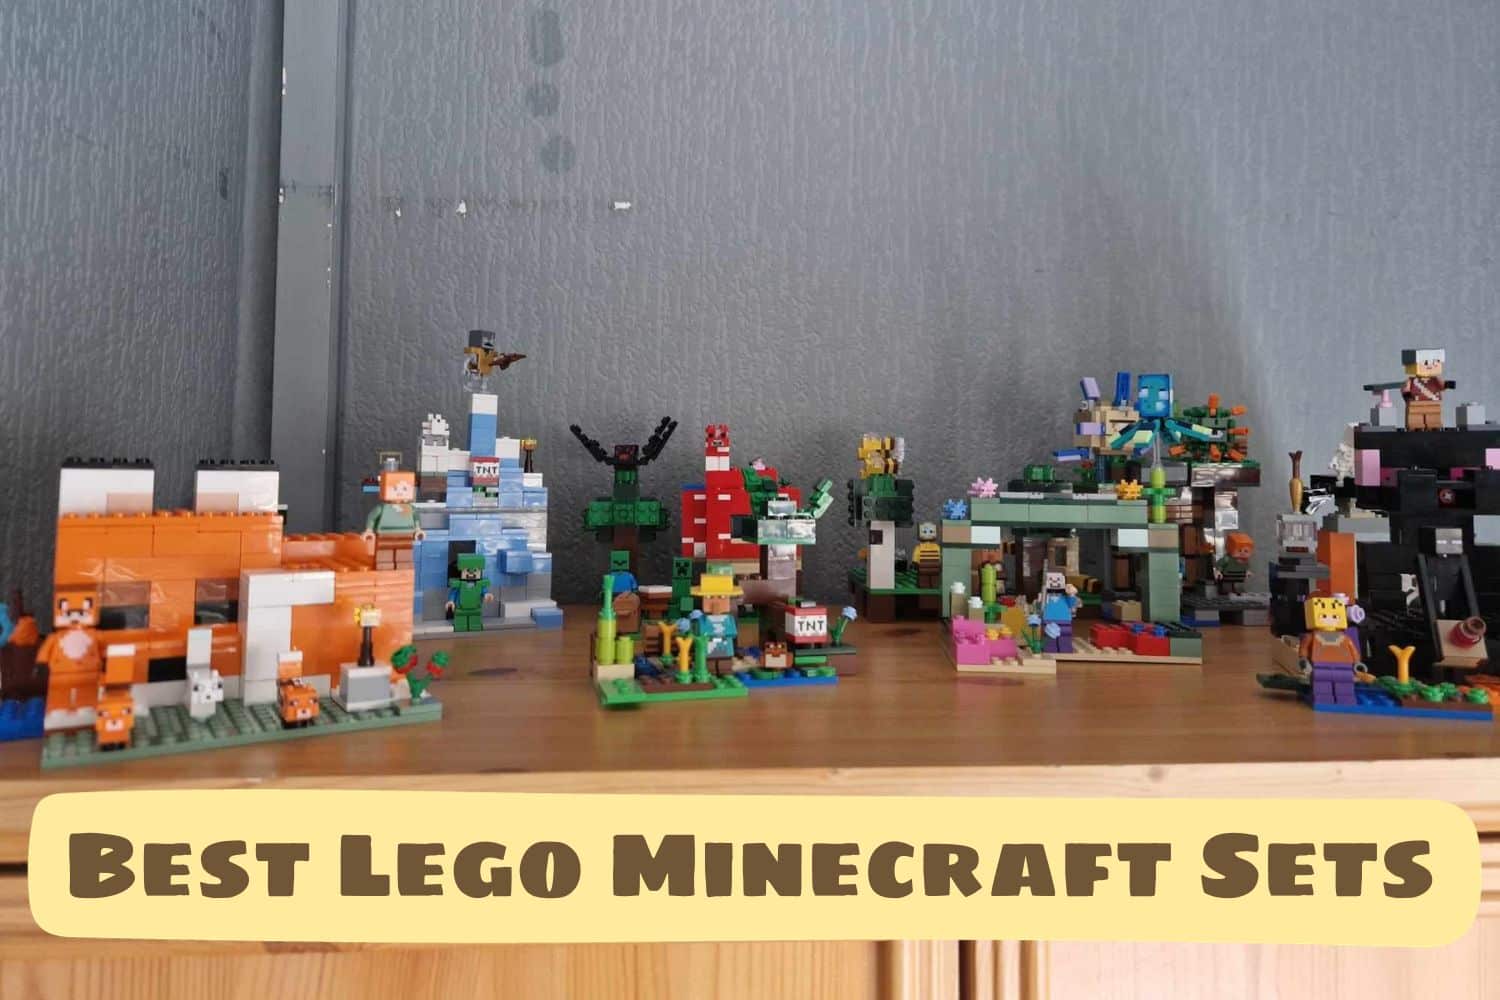 Best Lego Minecraft Sets